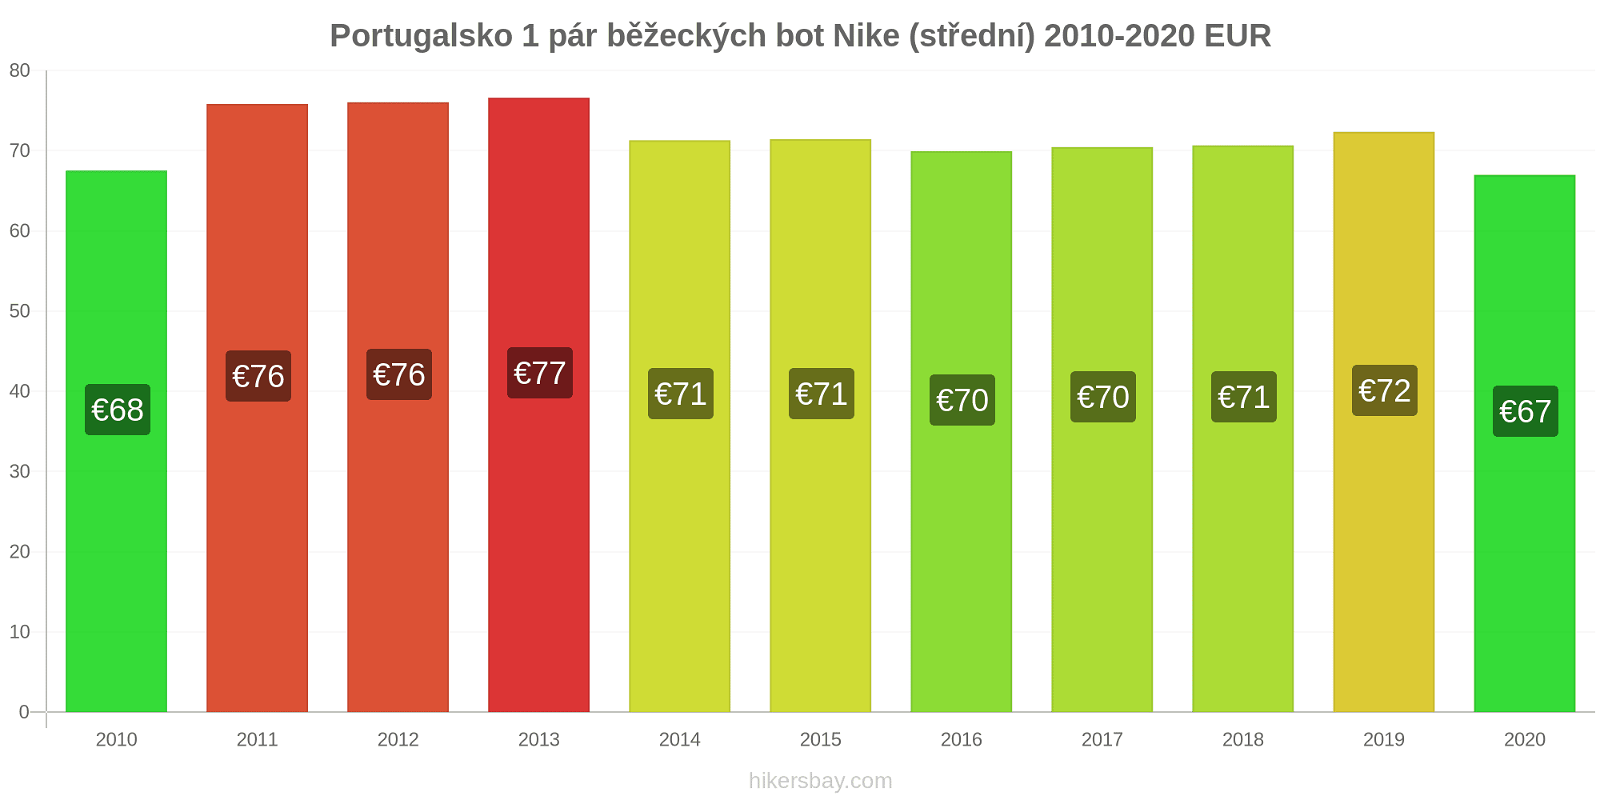 Portugalsko změny cen 1 pár běžeckých bot Nike (střední) hikersbay.com